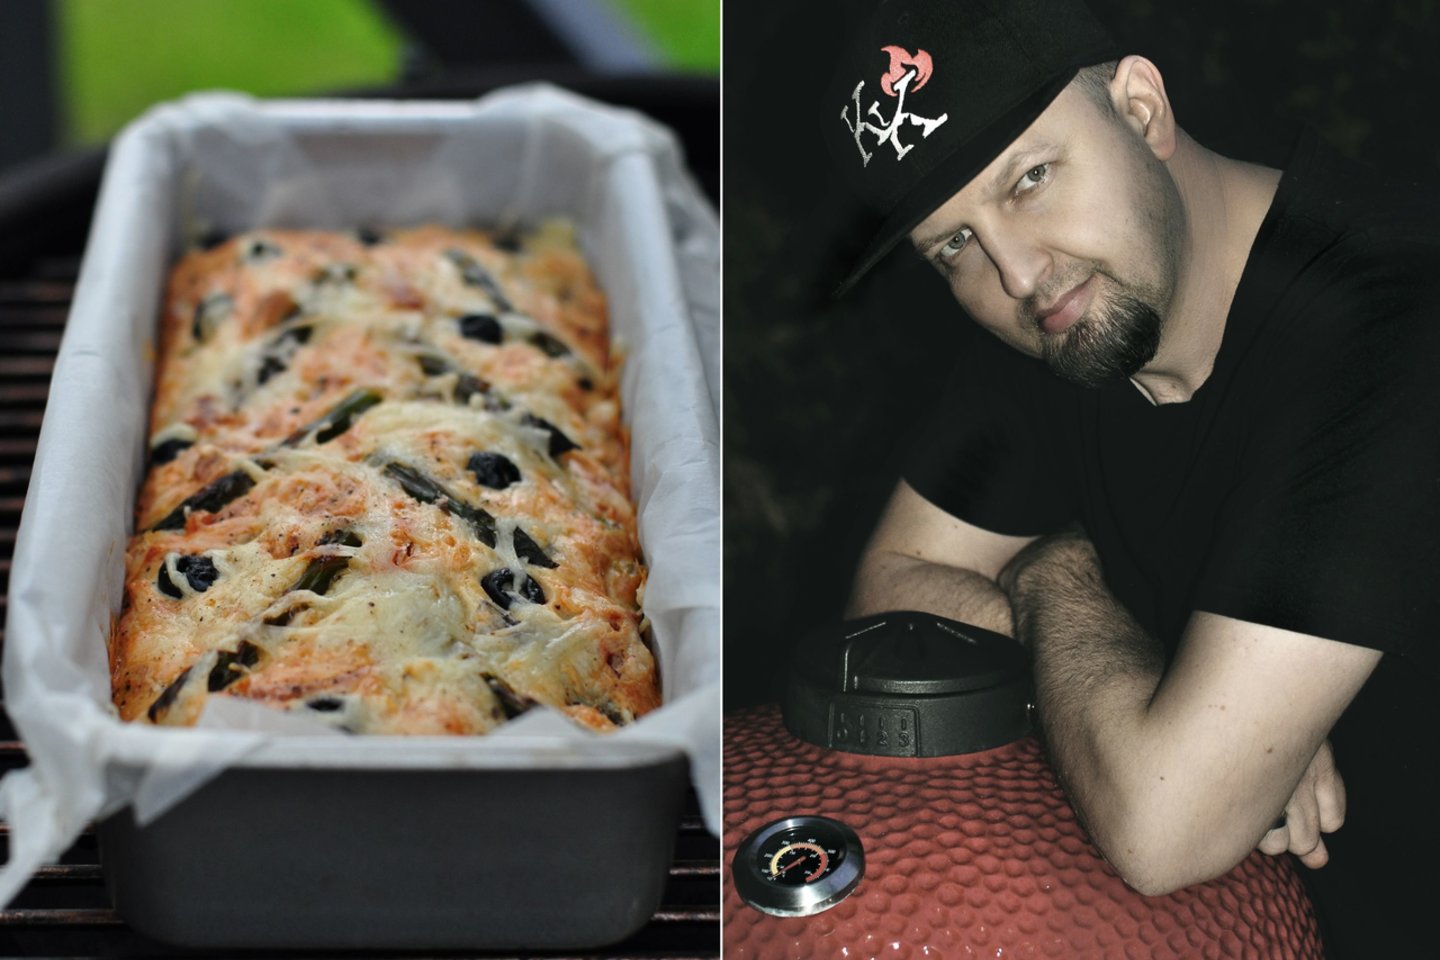  Smidrų, džiovintų pomidorų ir alyvuogių pyragas pagal K. Krivicko receptą.<br> Asmeninis albumas.